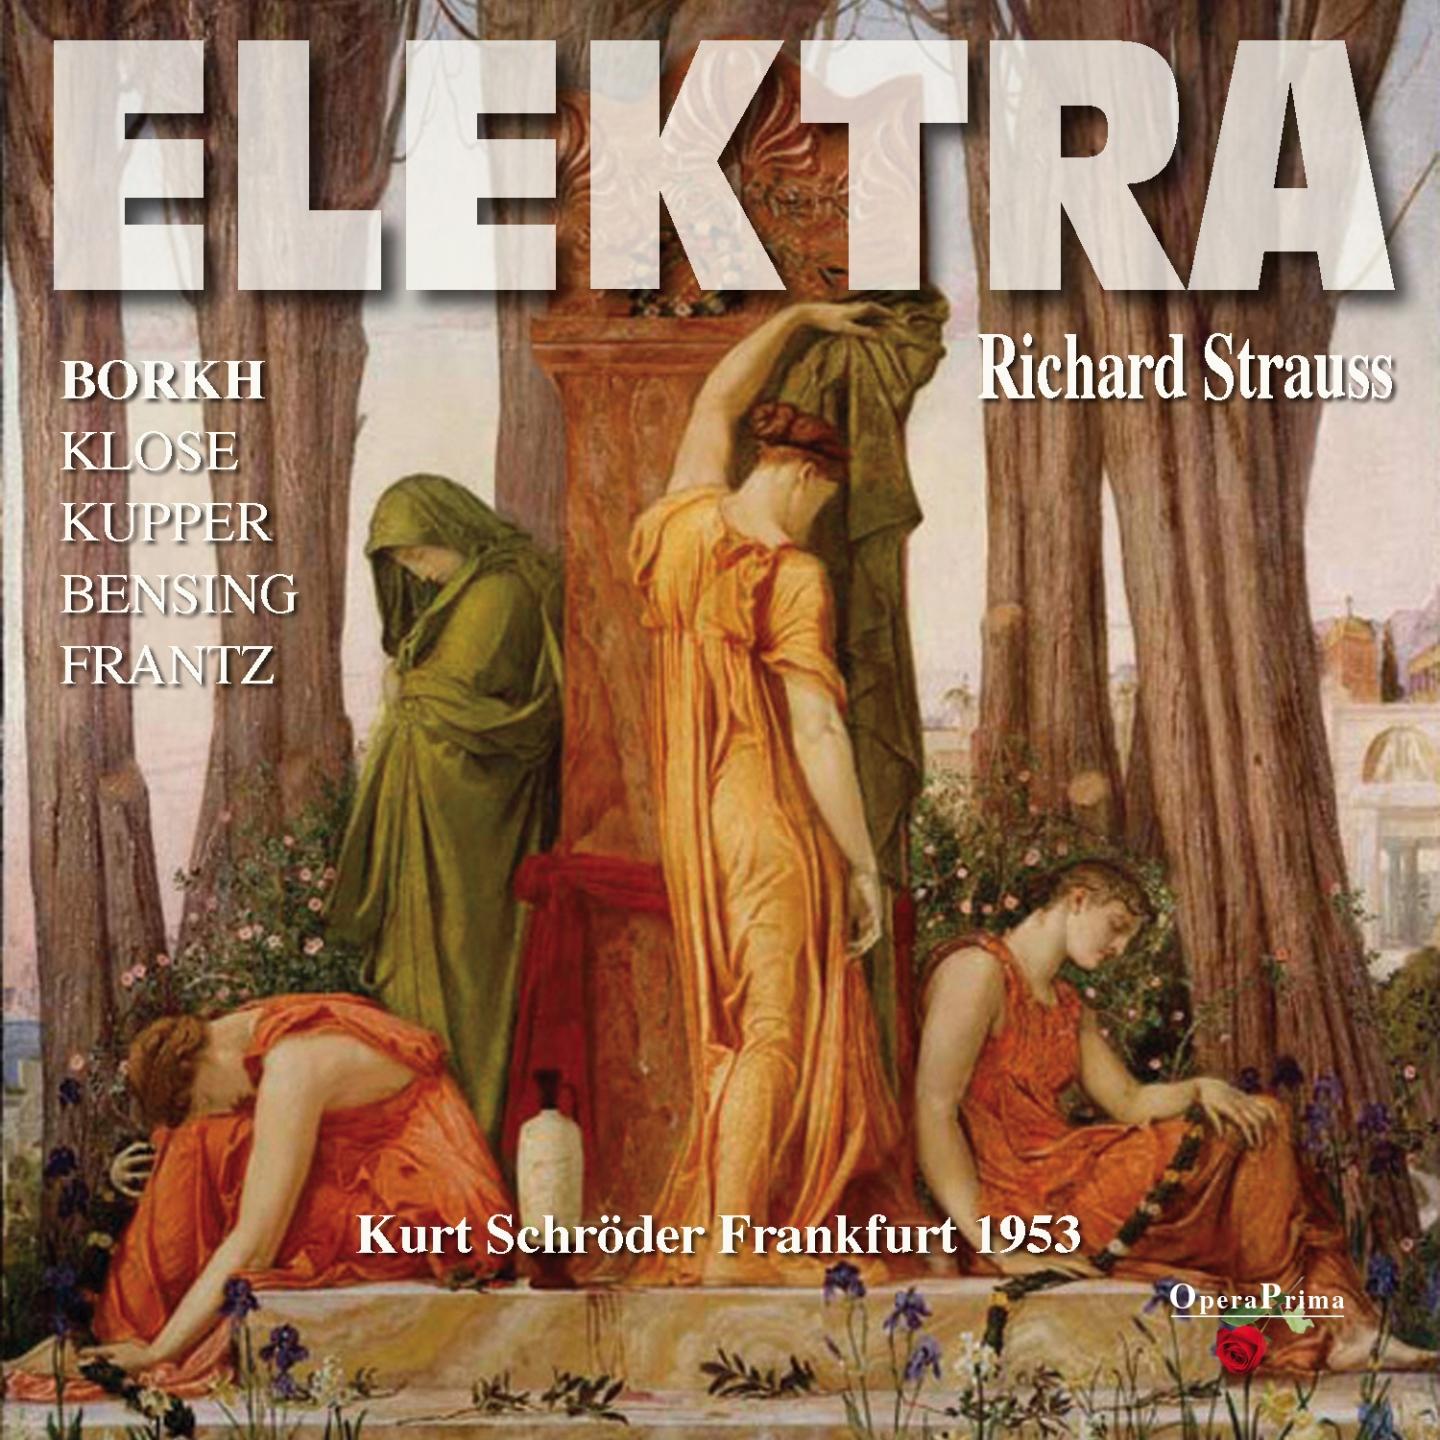 Elektra: Elektra! Schwester!